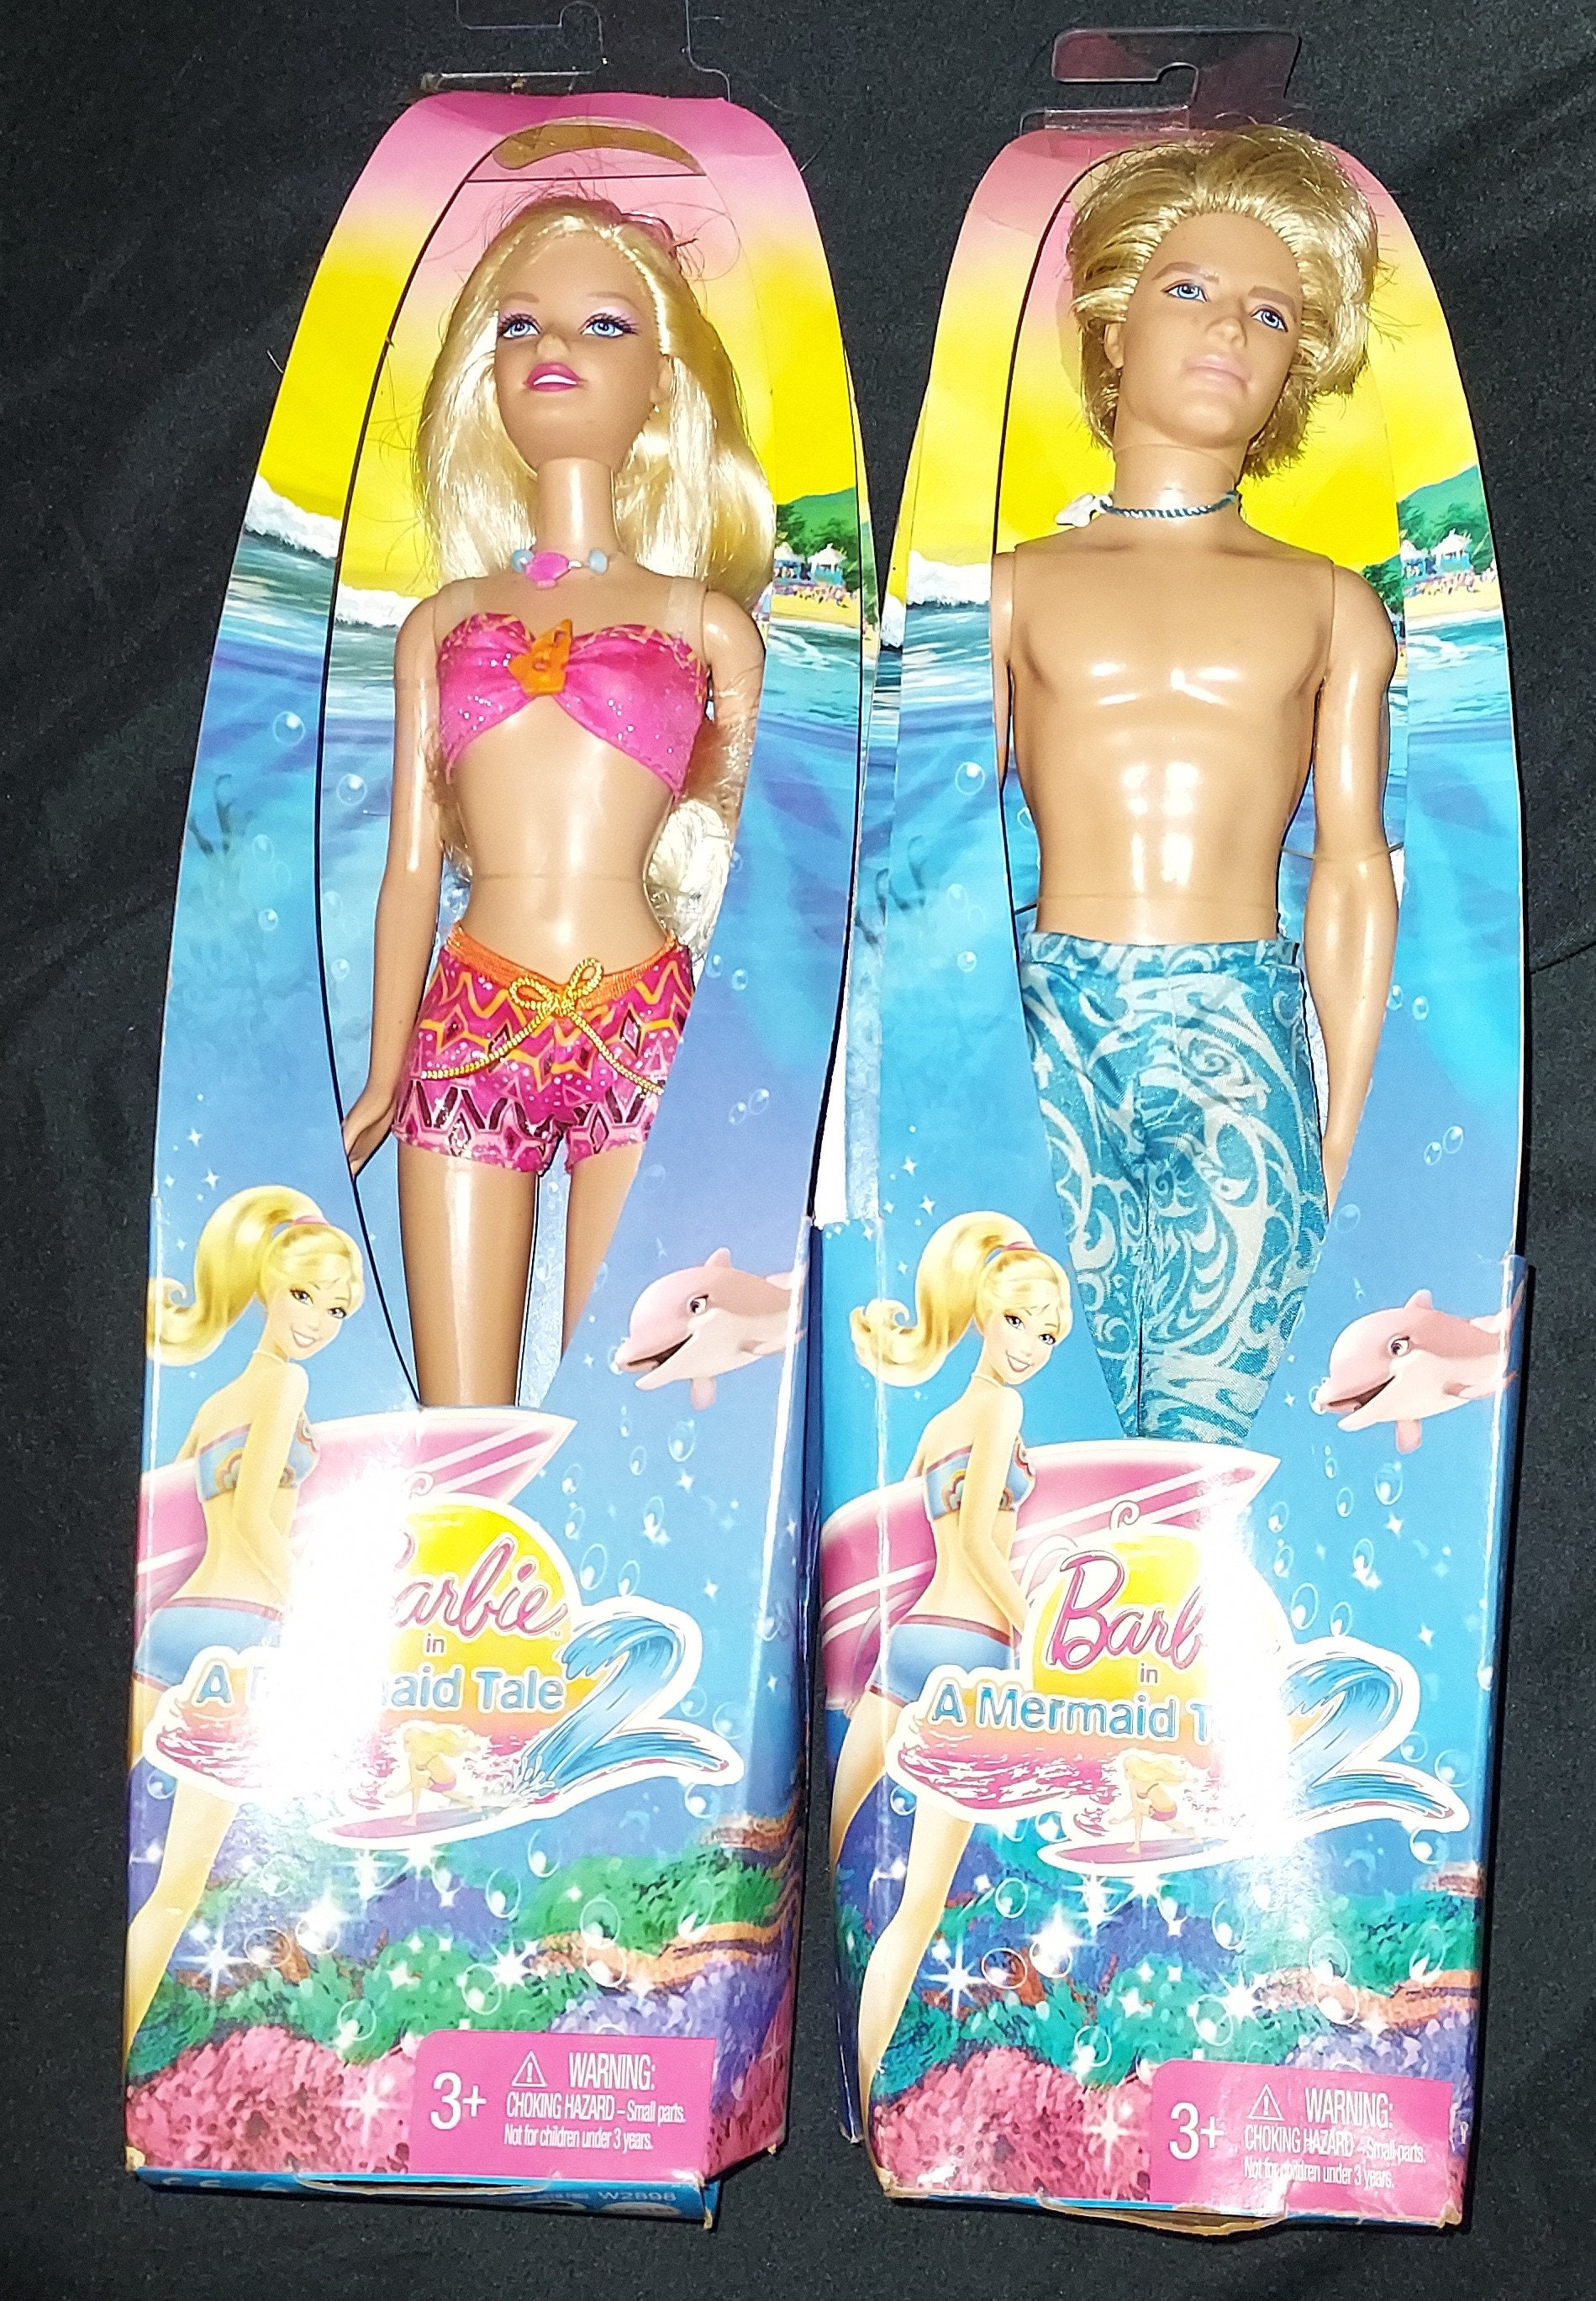 BARBIE, Barbie & Ken in A Mermaid Tale, Mattel, NRFB 